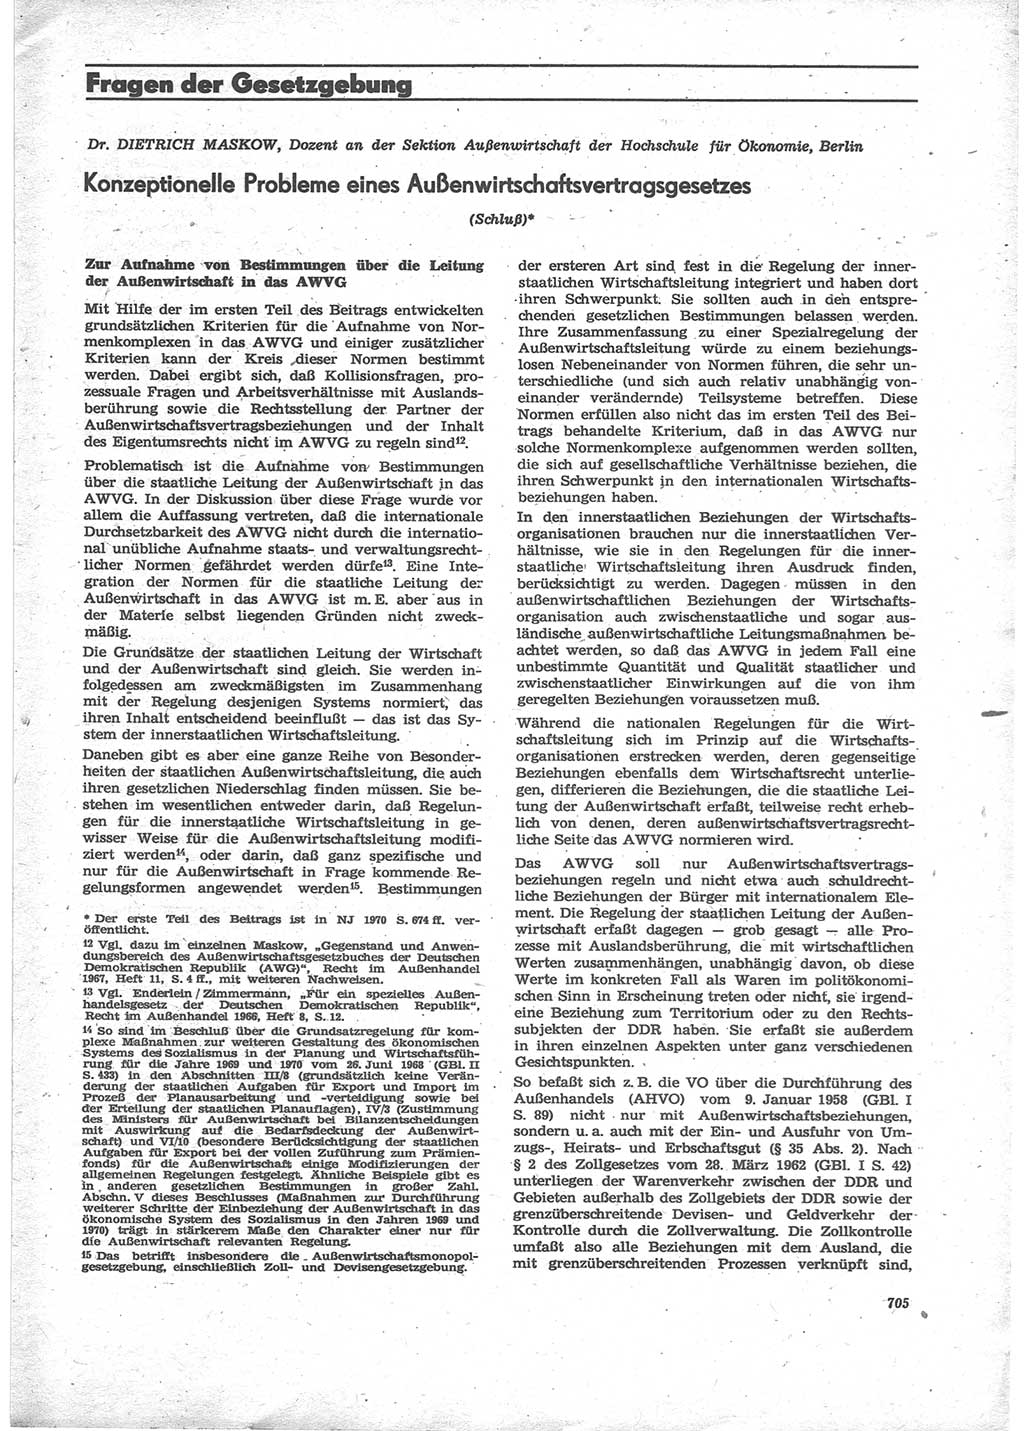 Neue Justiz (NJ), Zeitschrift für Recht und Rechtswissenschaft [Deutsche Demokratische Republik (DDR)], 24. Jahrgang 1970, Seite 705 (NJ DDR 1970, S. 705)